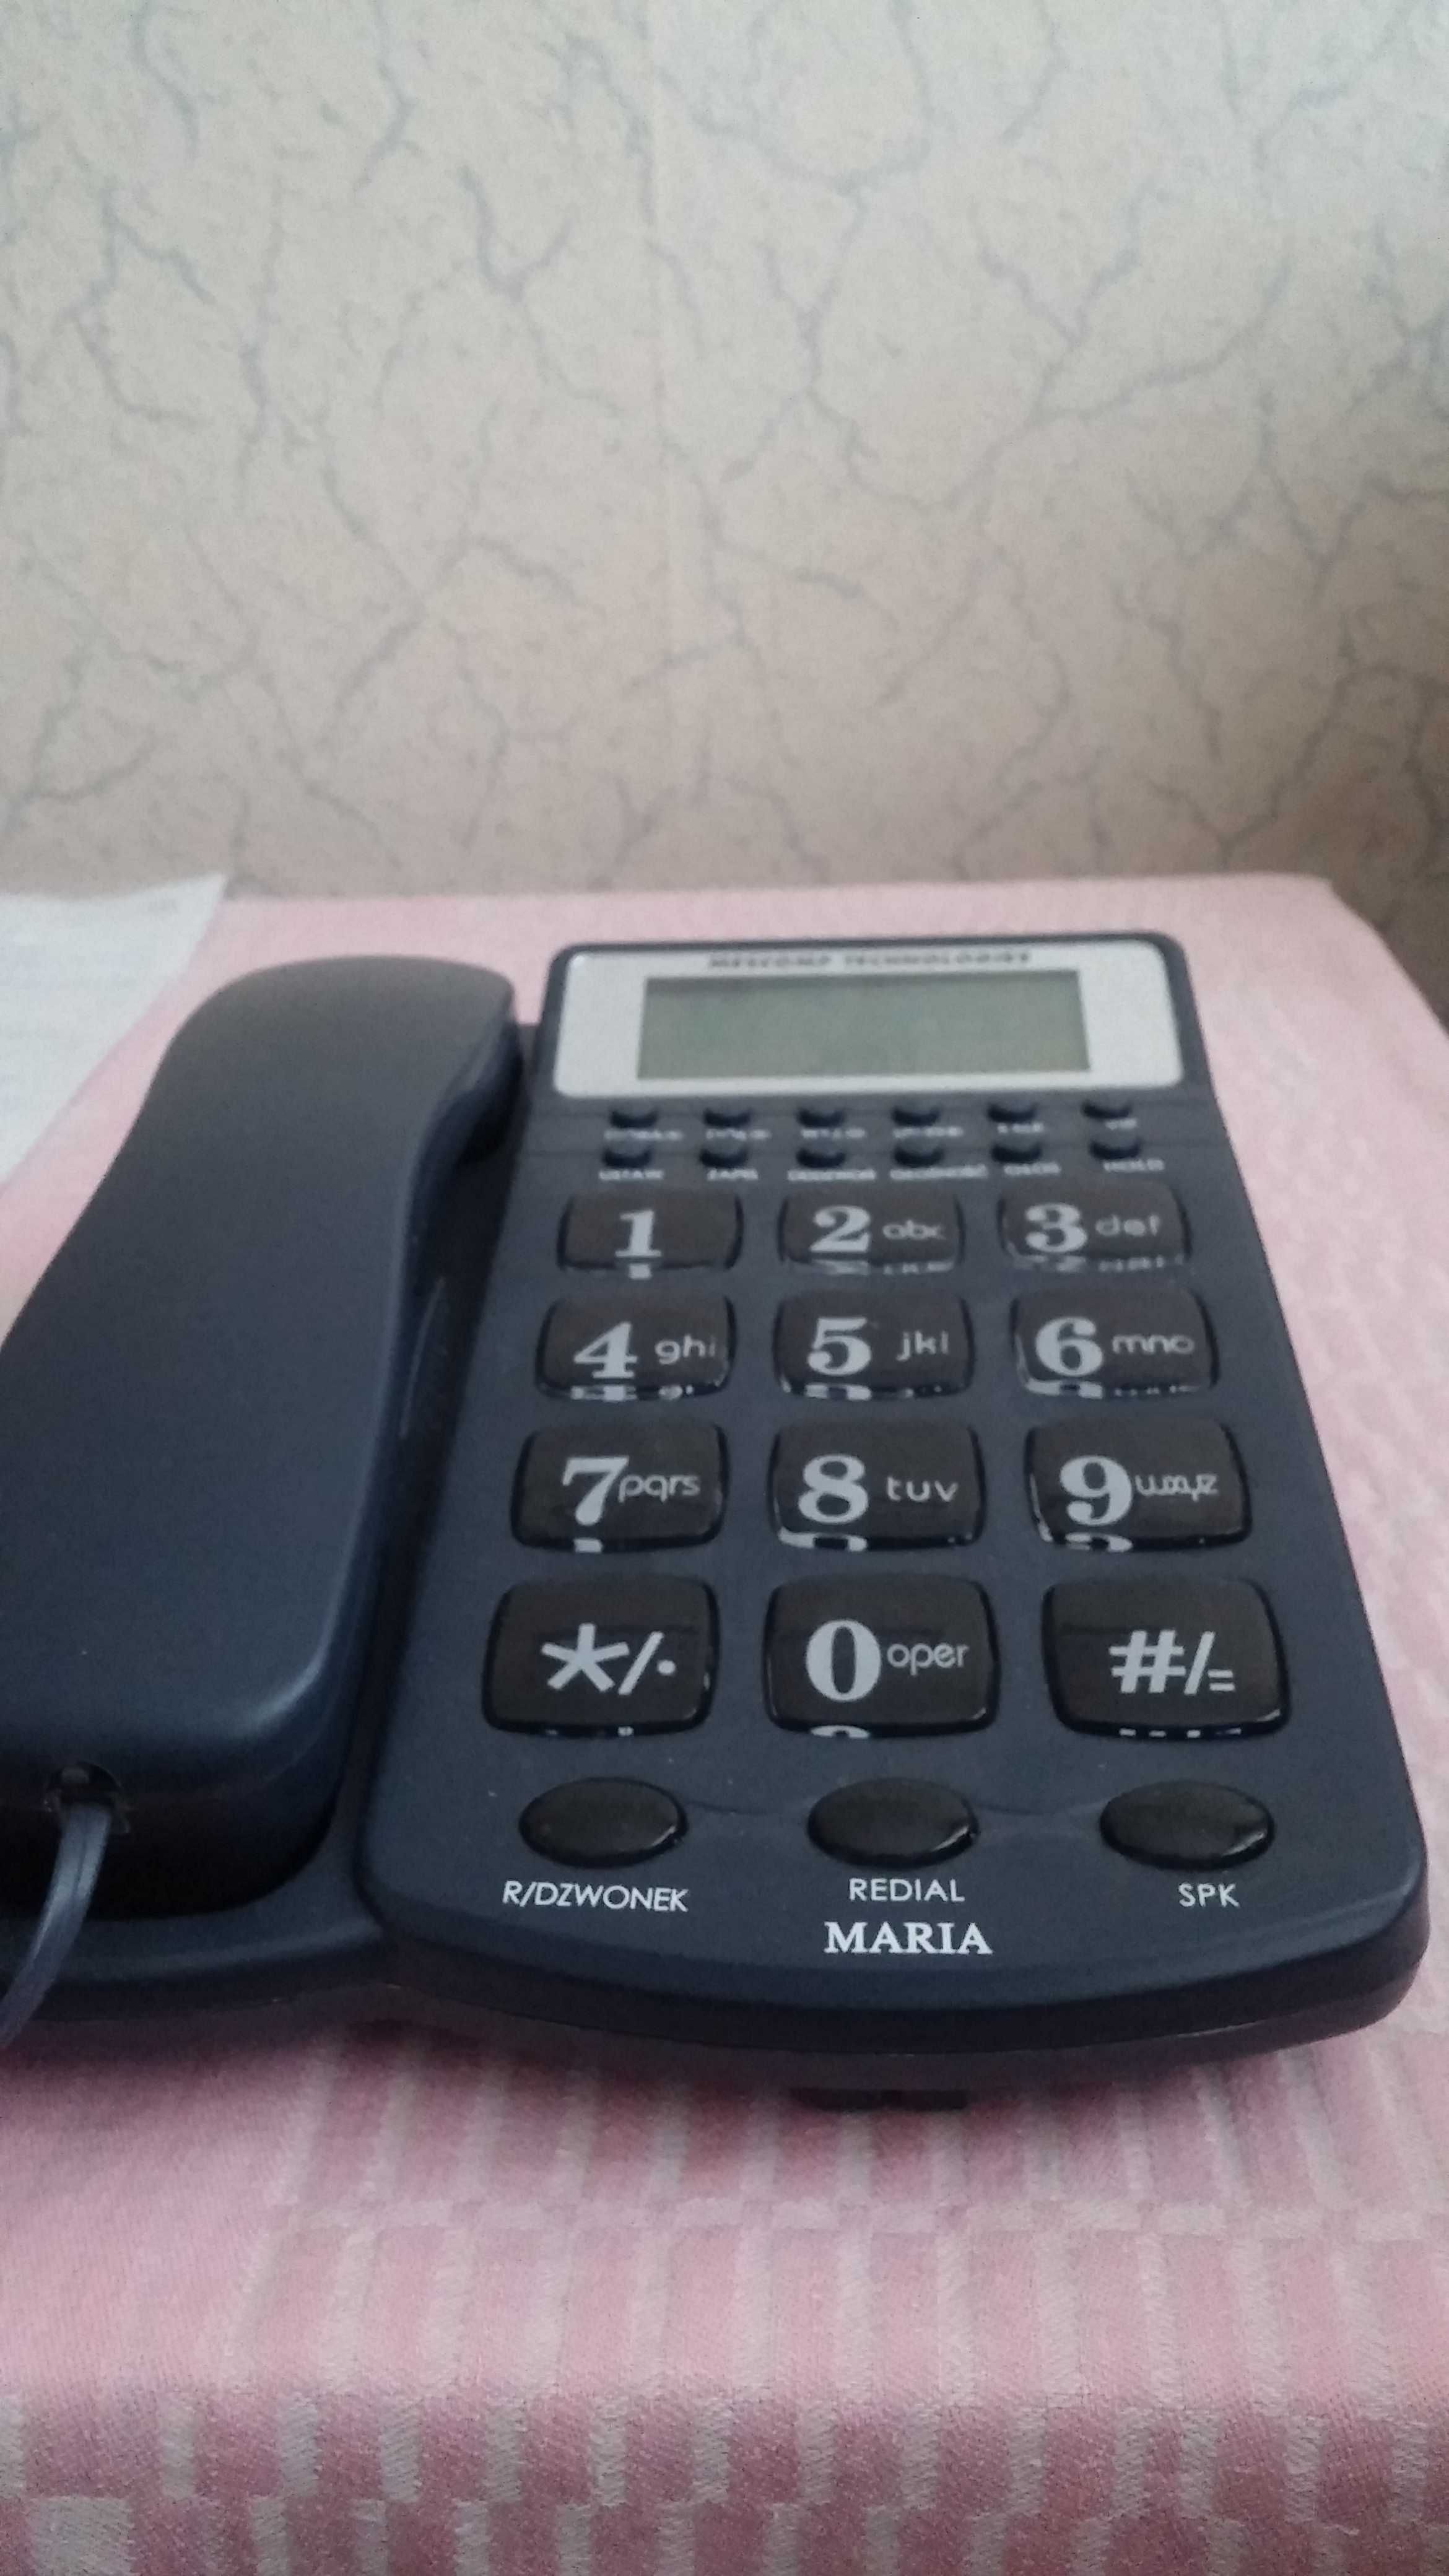 Telefon Mescomp dla seniora (duże czytelne klawisze)możliwa wysyłka